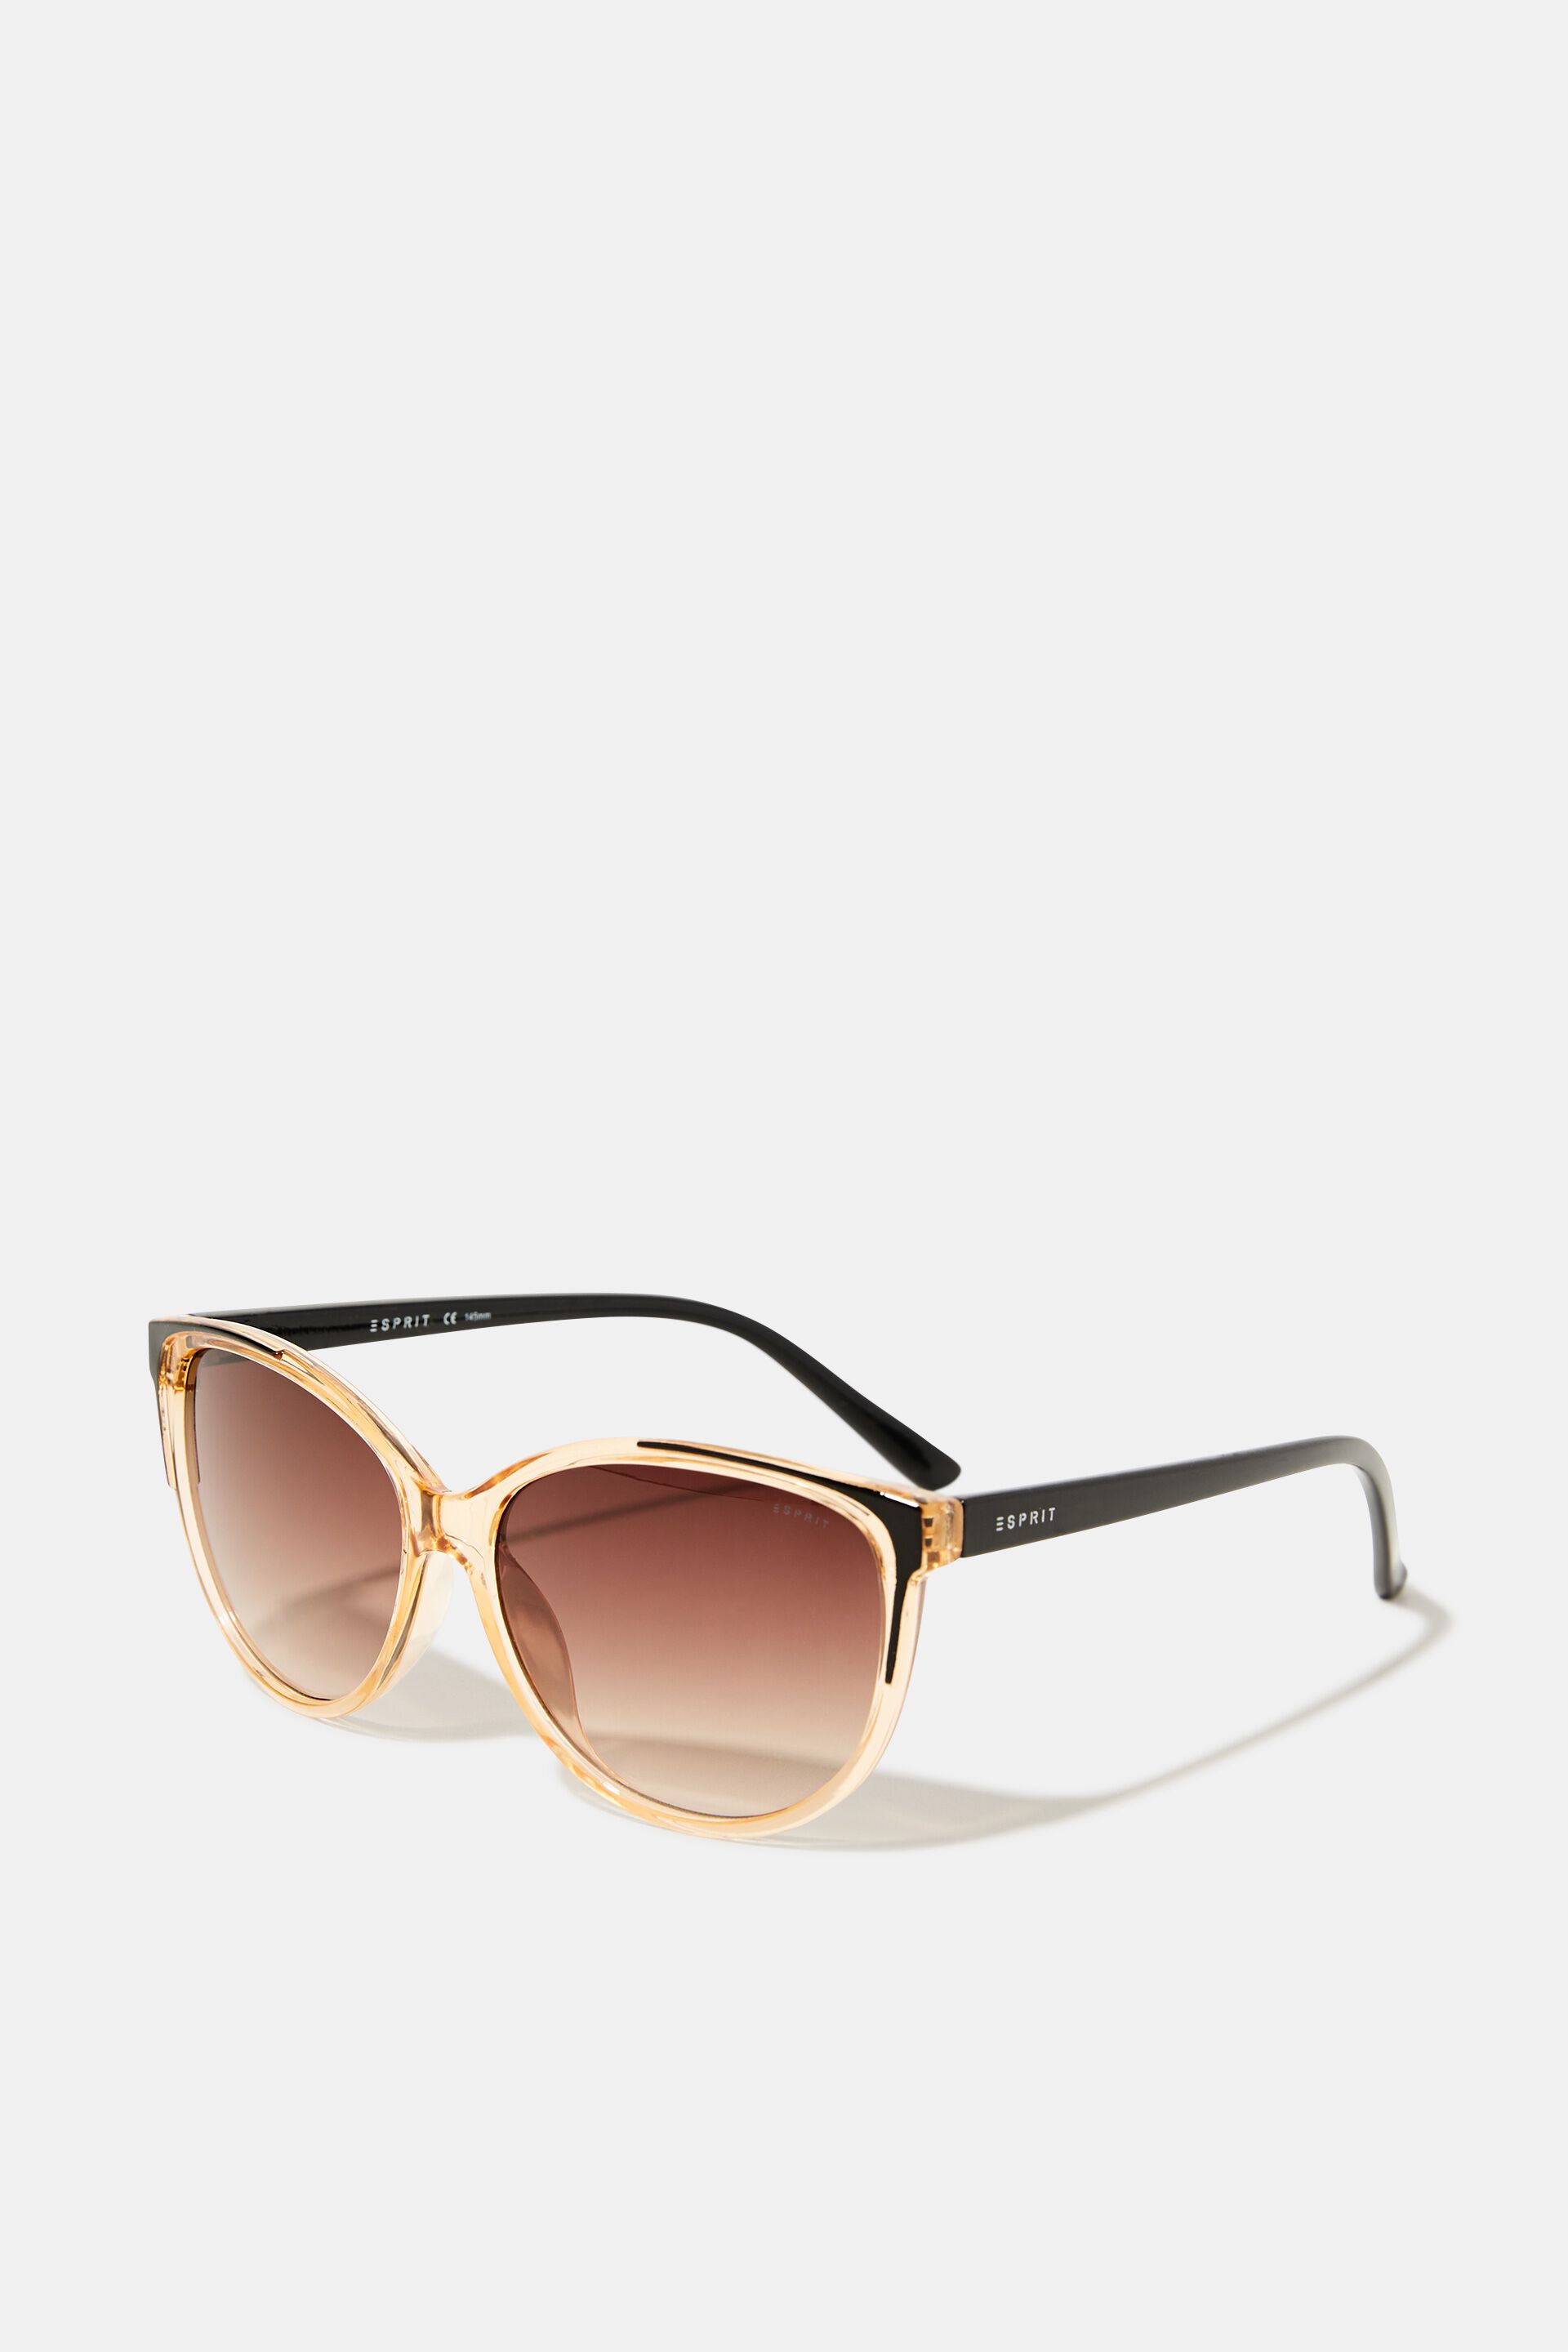 Esprit frame transparent Sunglasses with